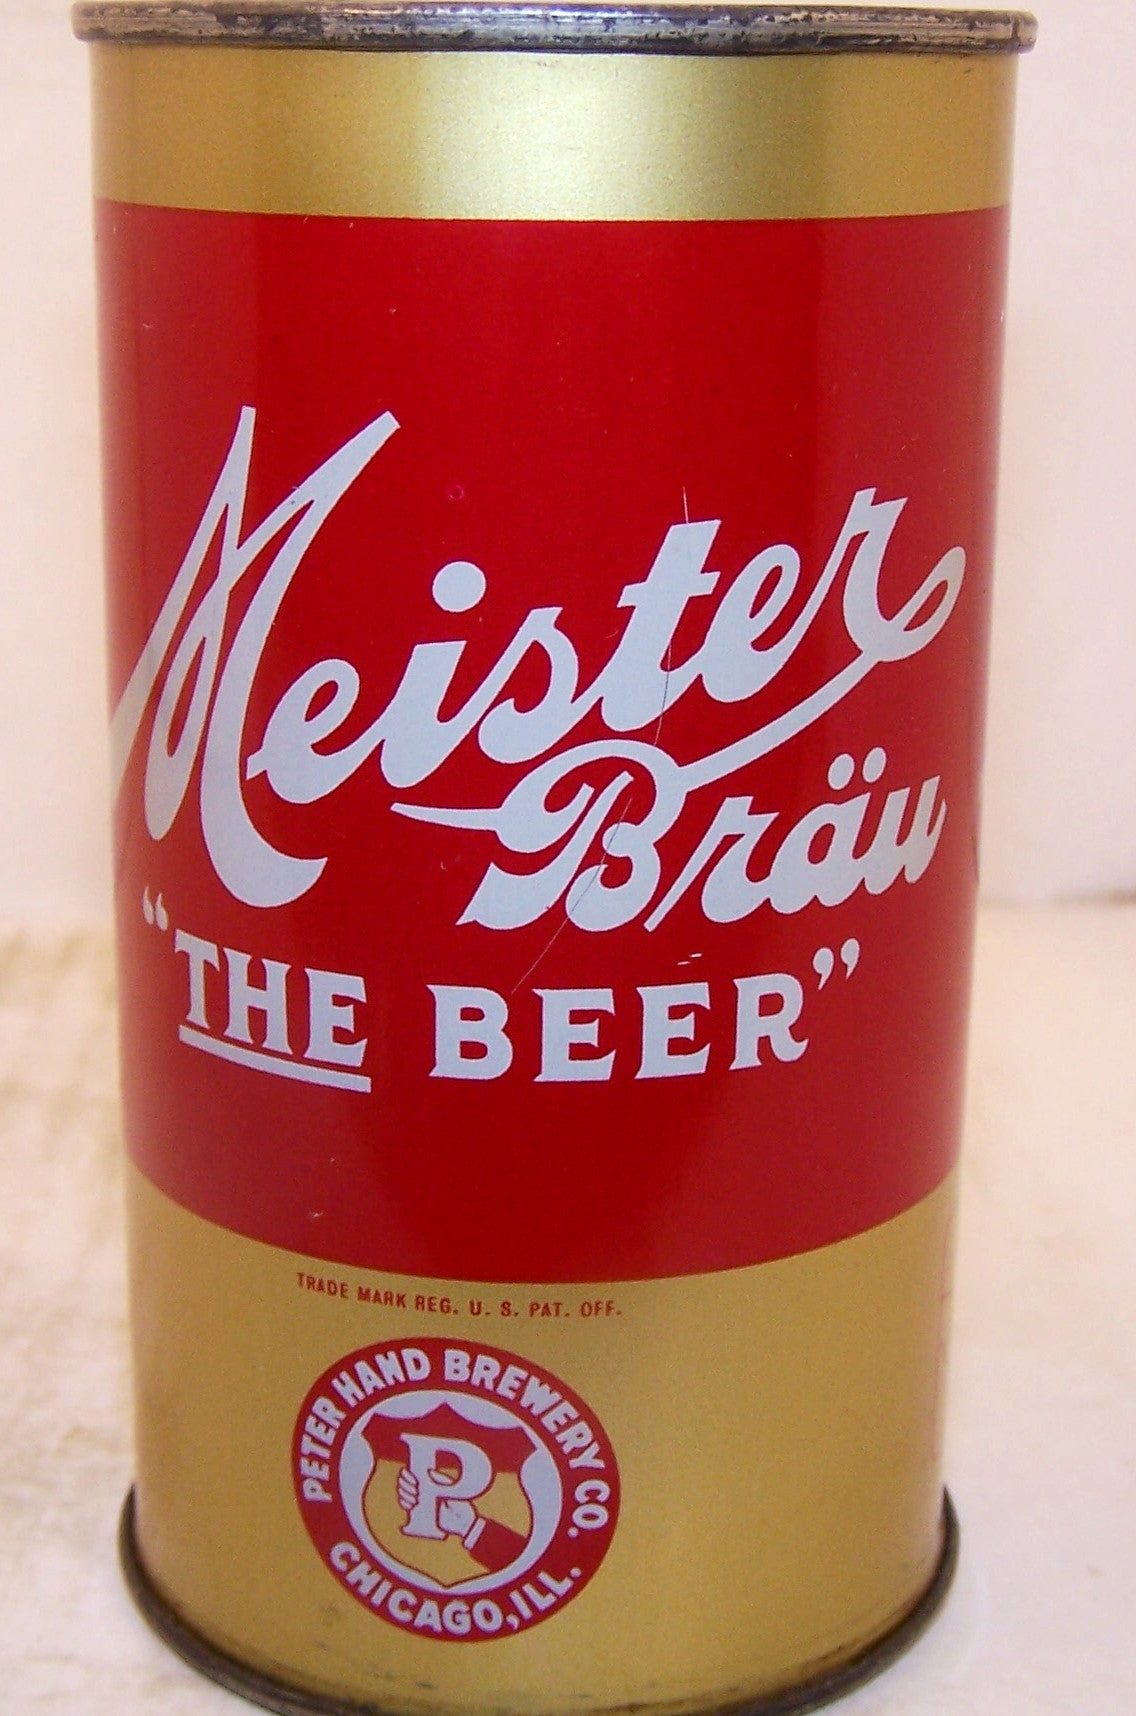 Meister Brau "The Beer" Lilek page # 526, Grade 1/1+ Sold 2/13/15